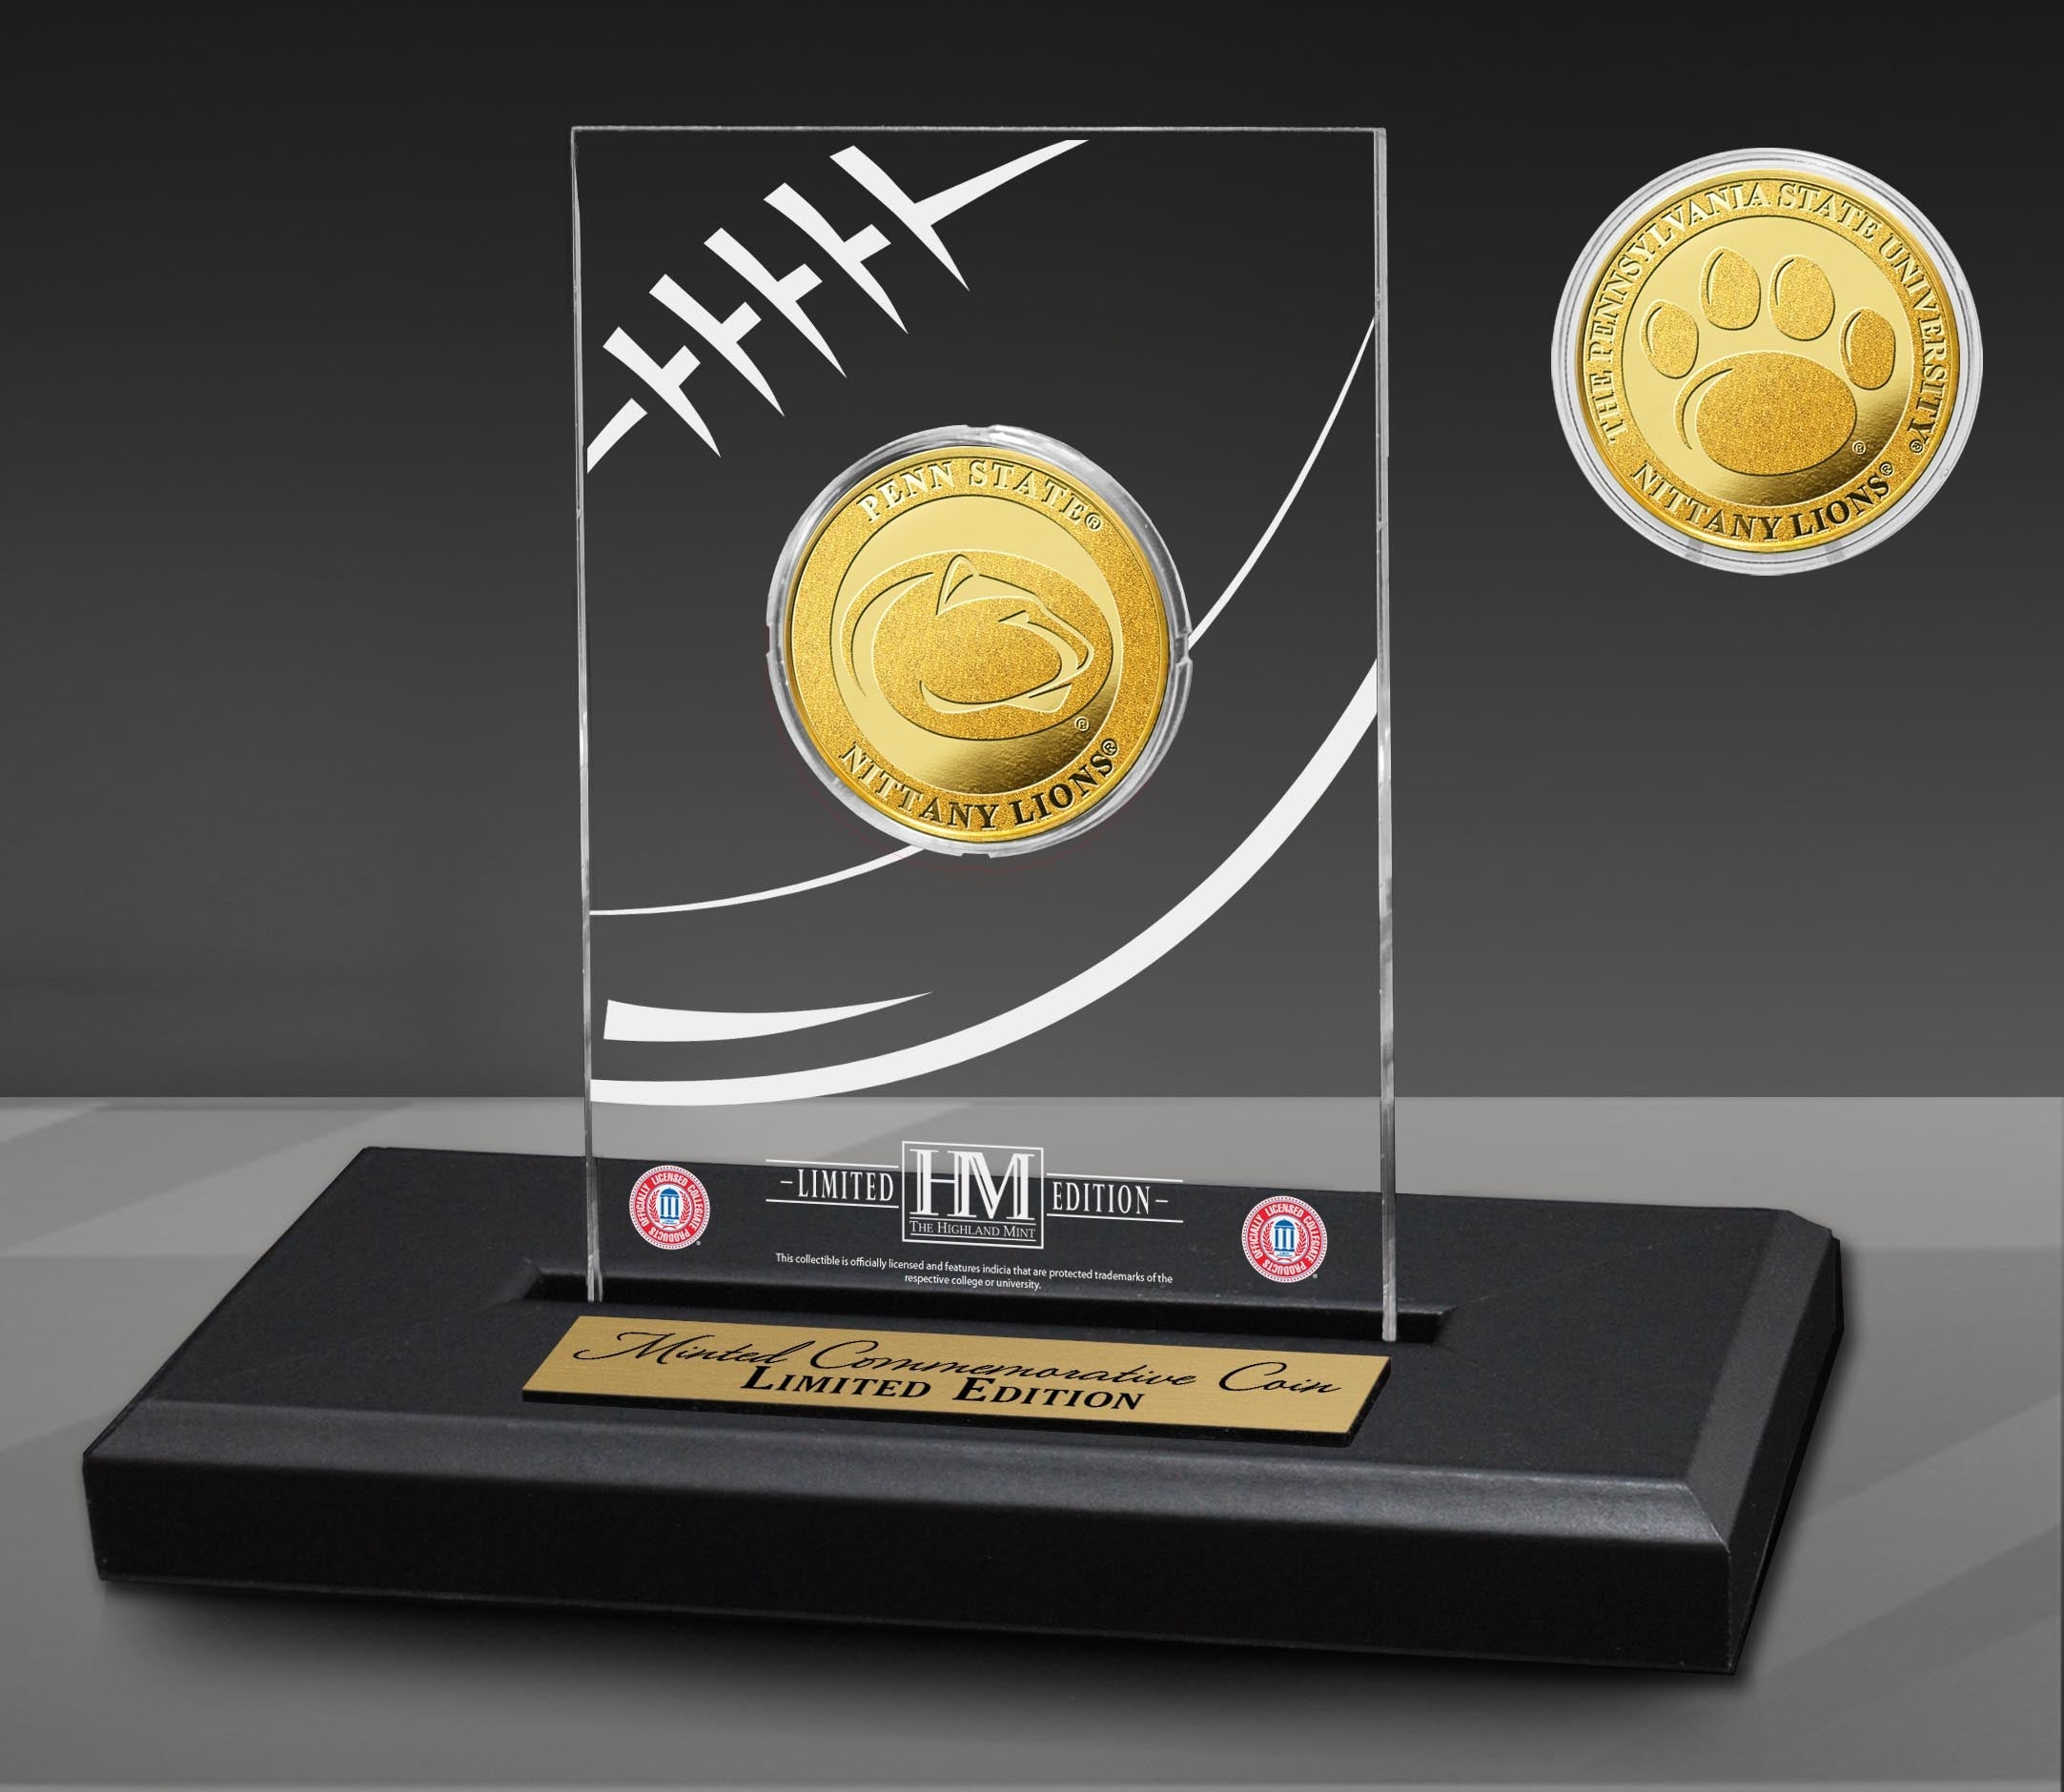 Penn State University Nittany Lions Gold Coin in AcrylicÃƒâ€šÃ‚Â Display